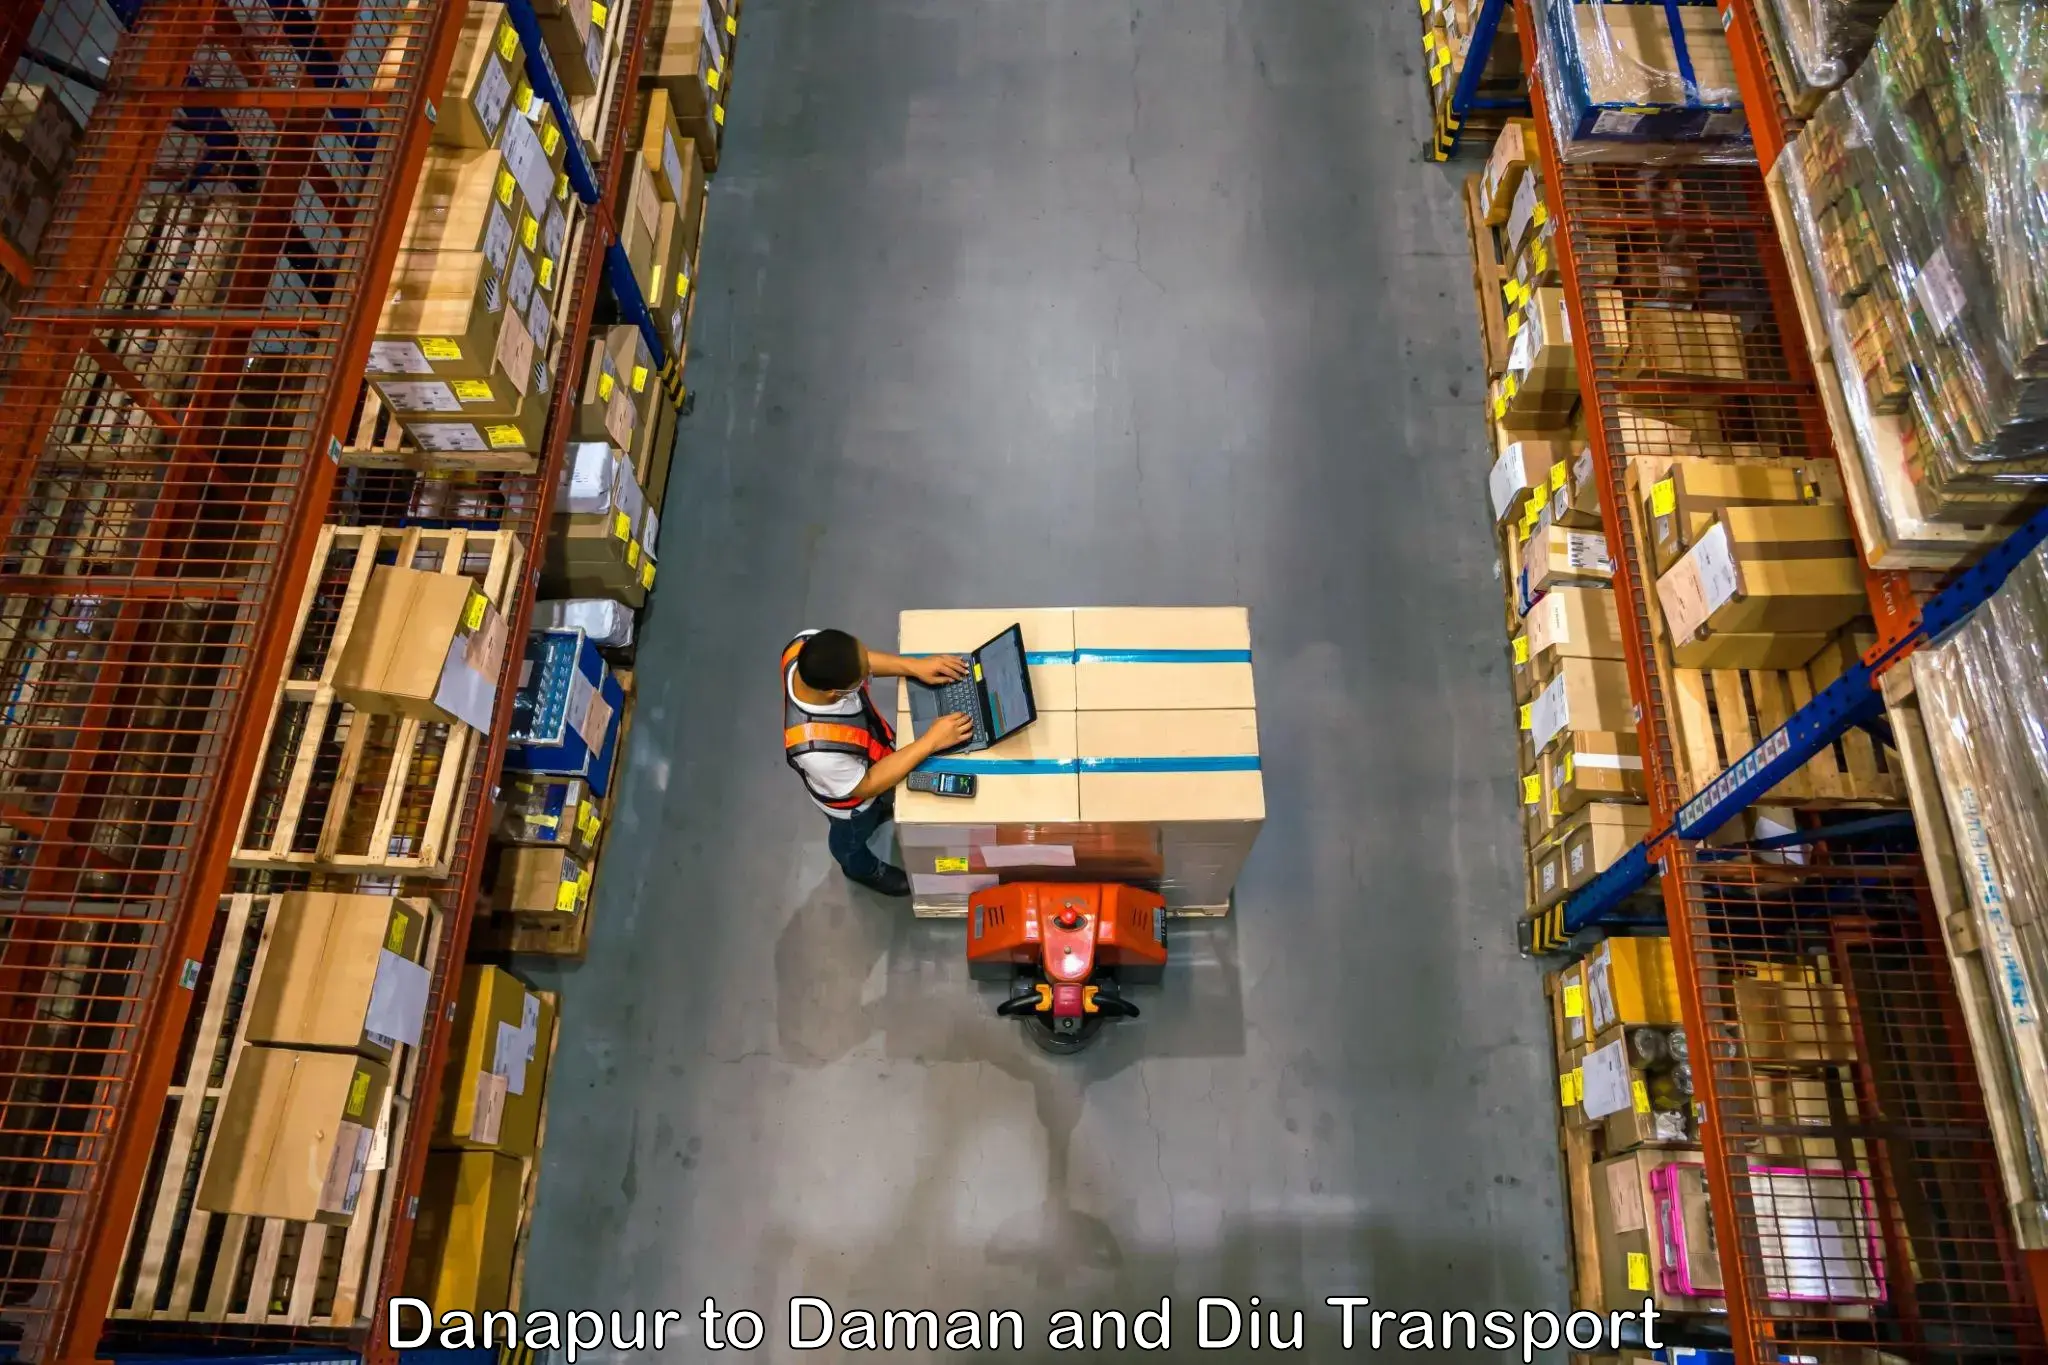 Lorry transport service Danapur to Daman and Diu